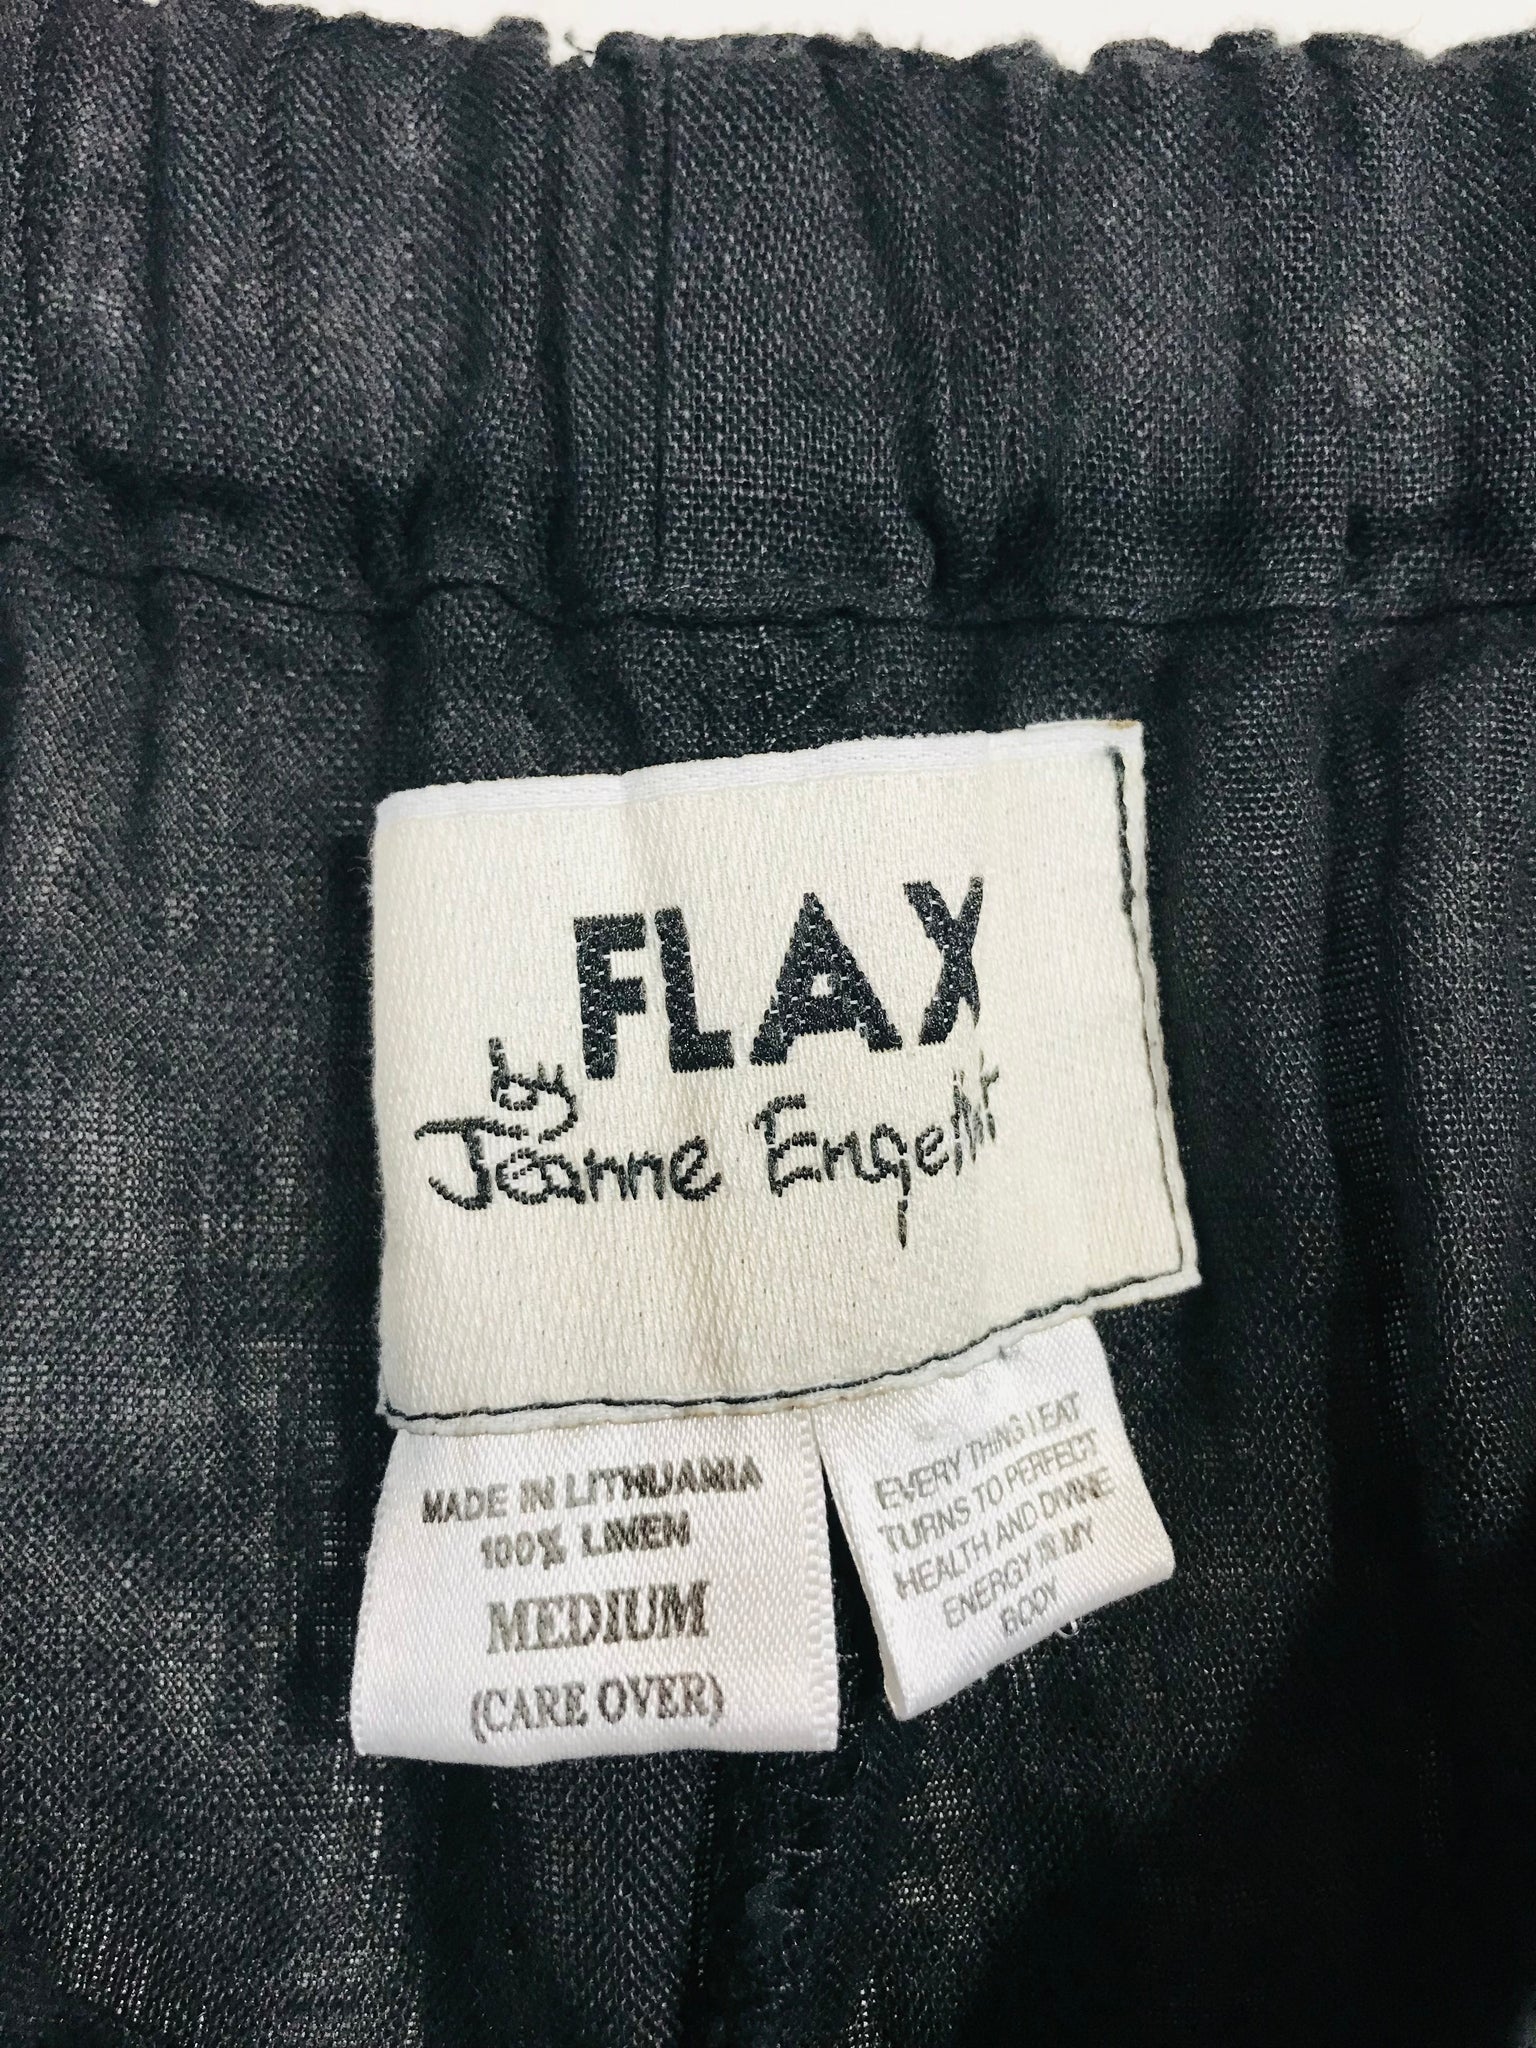 Flax by Jeanne Engelhart Women's Linen Casual Trousers, M UK10-12